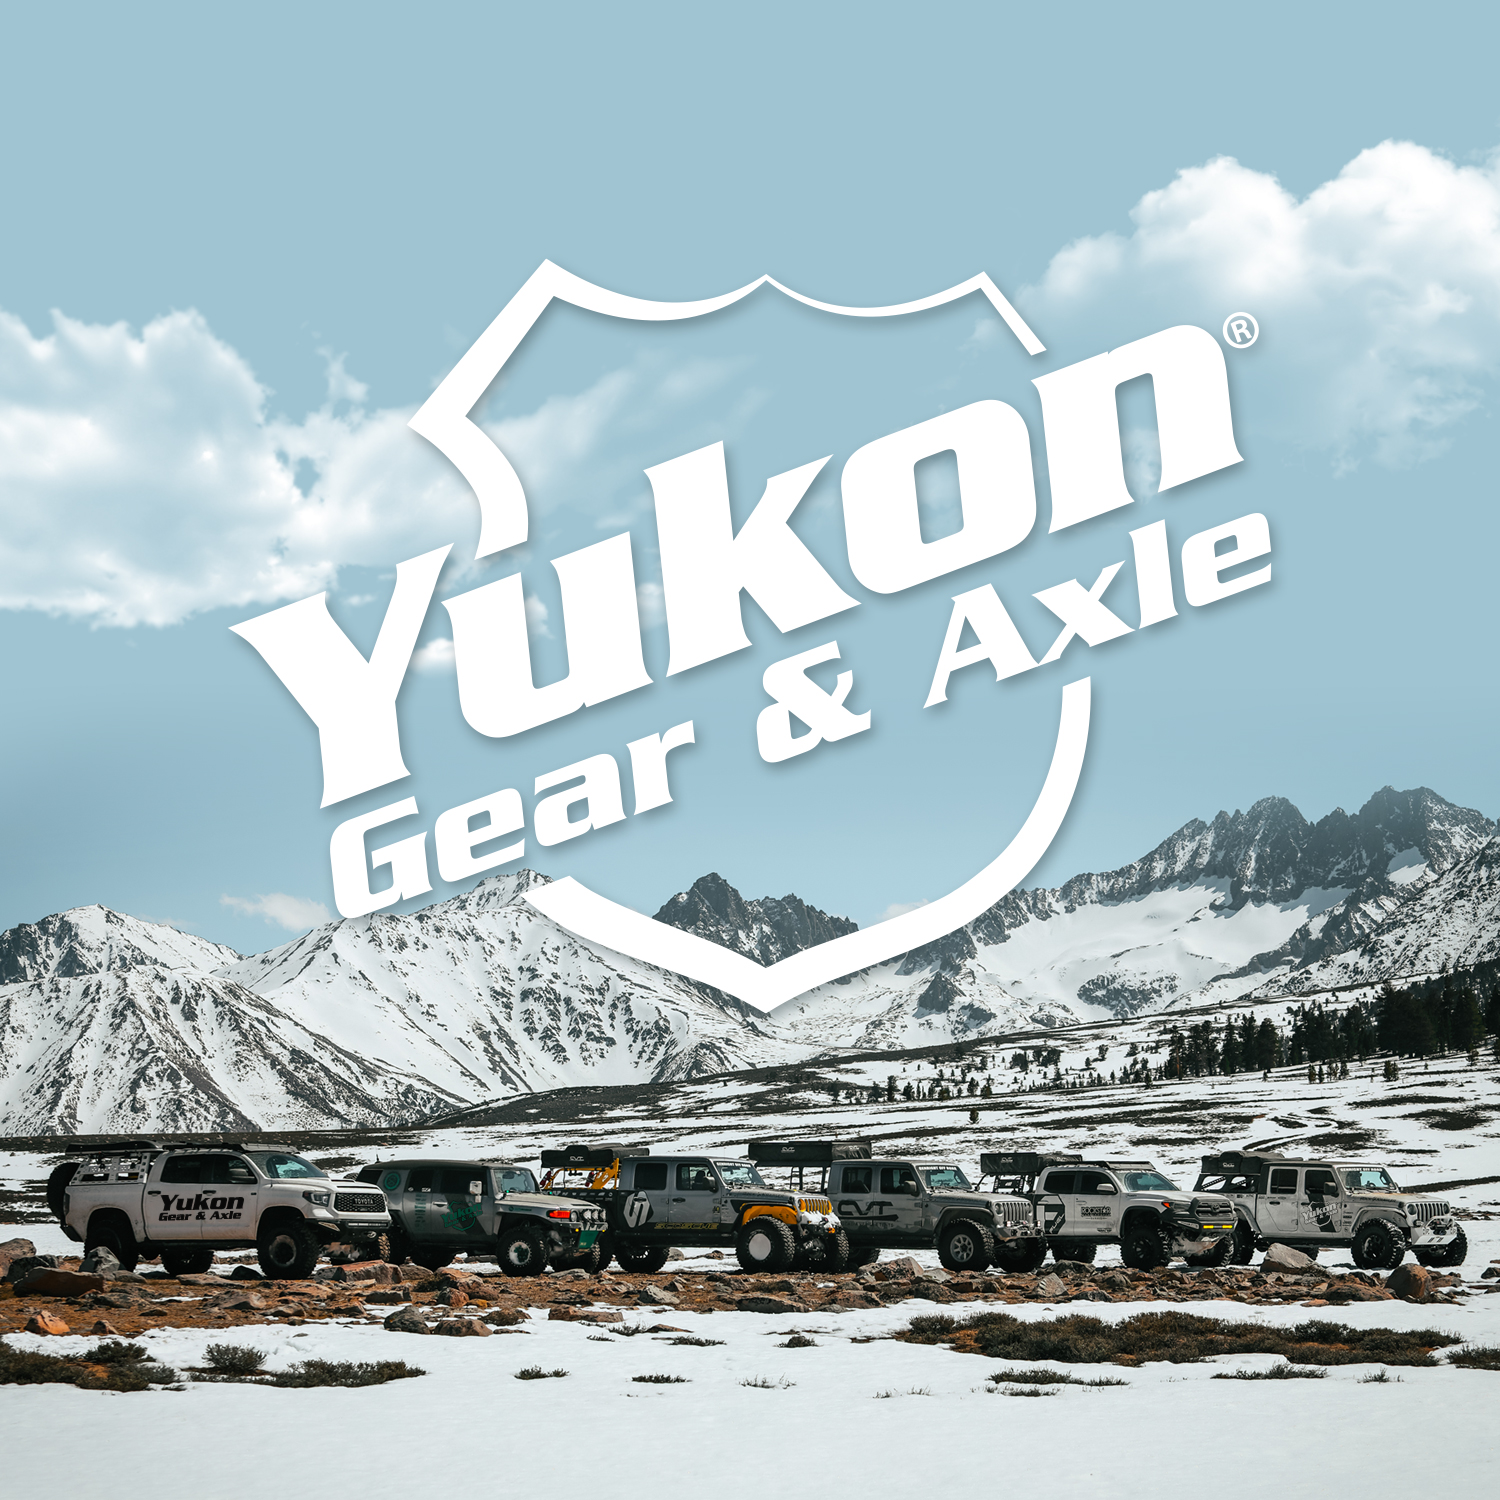 Yukon Master Overhaul kit for Model 20 differential 